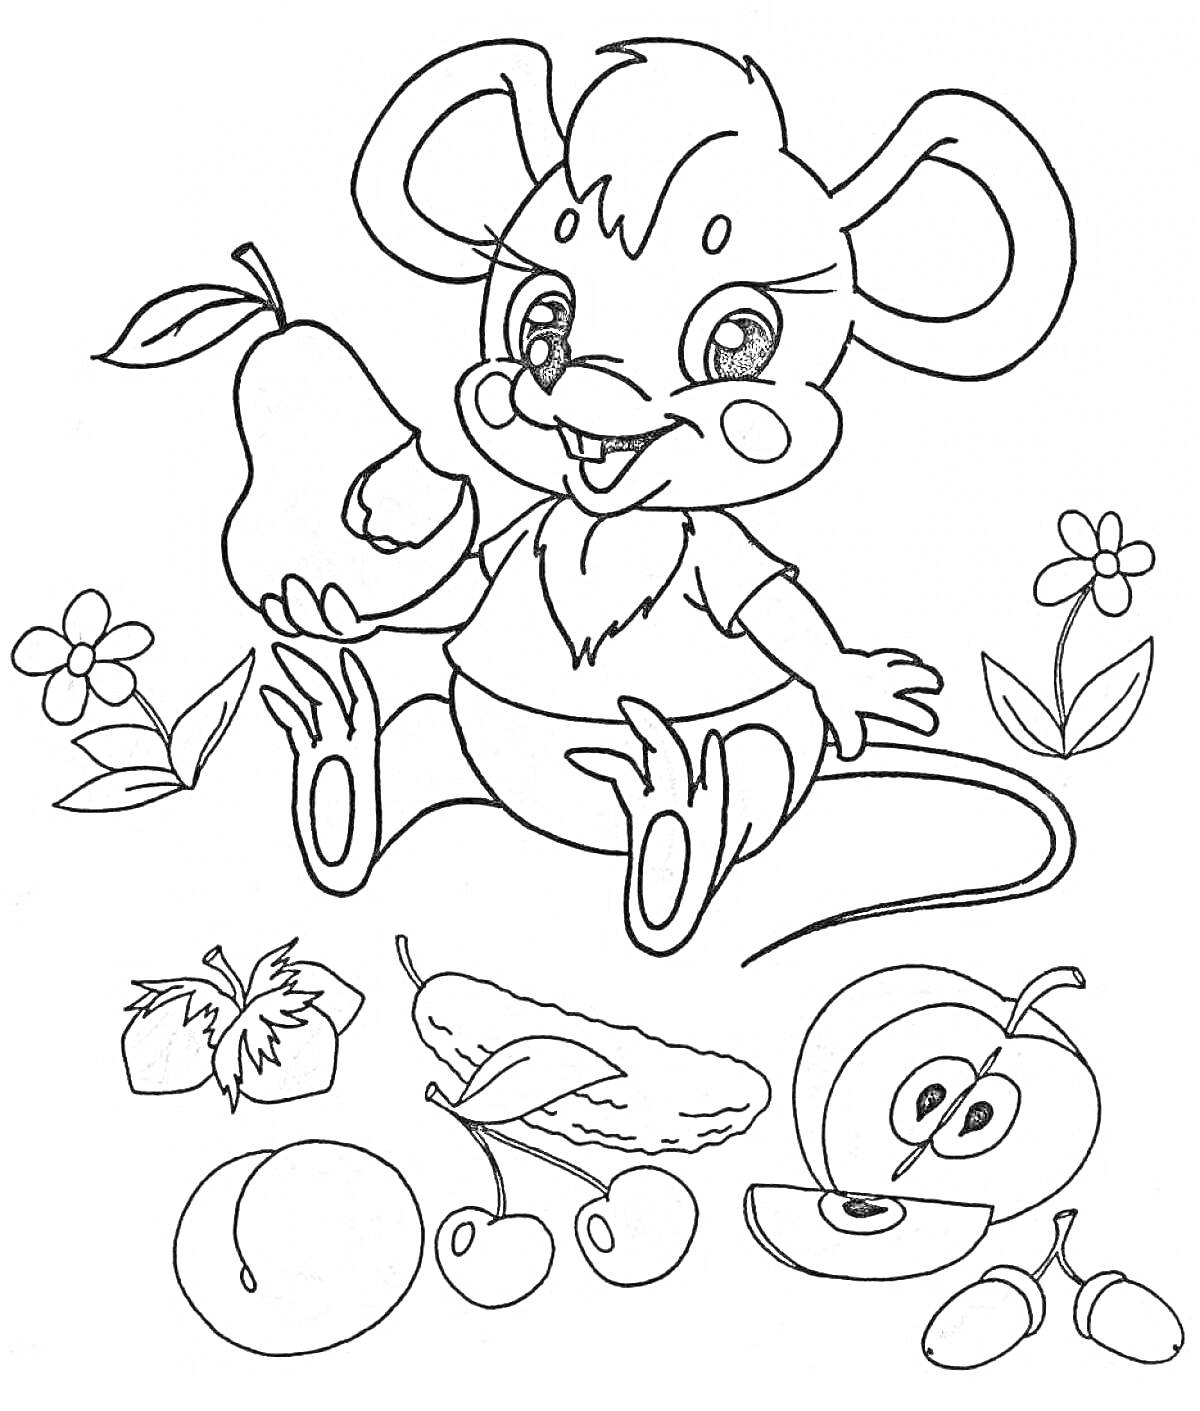 Мышонок с грушей и фруктами (мышонок, груша, цветы, фрукты: клубника, огурец, вишня, яблоко, персик)